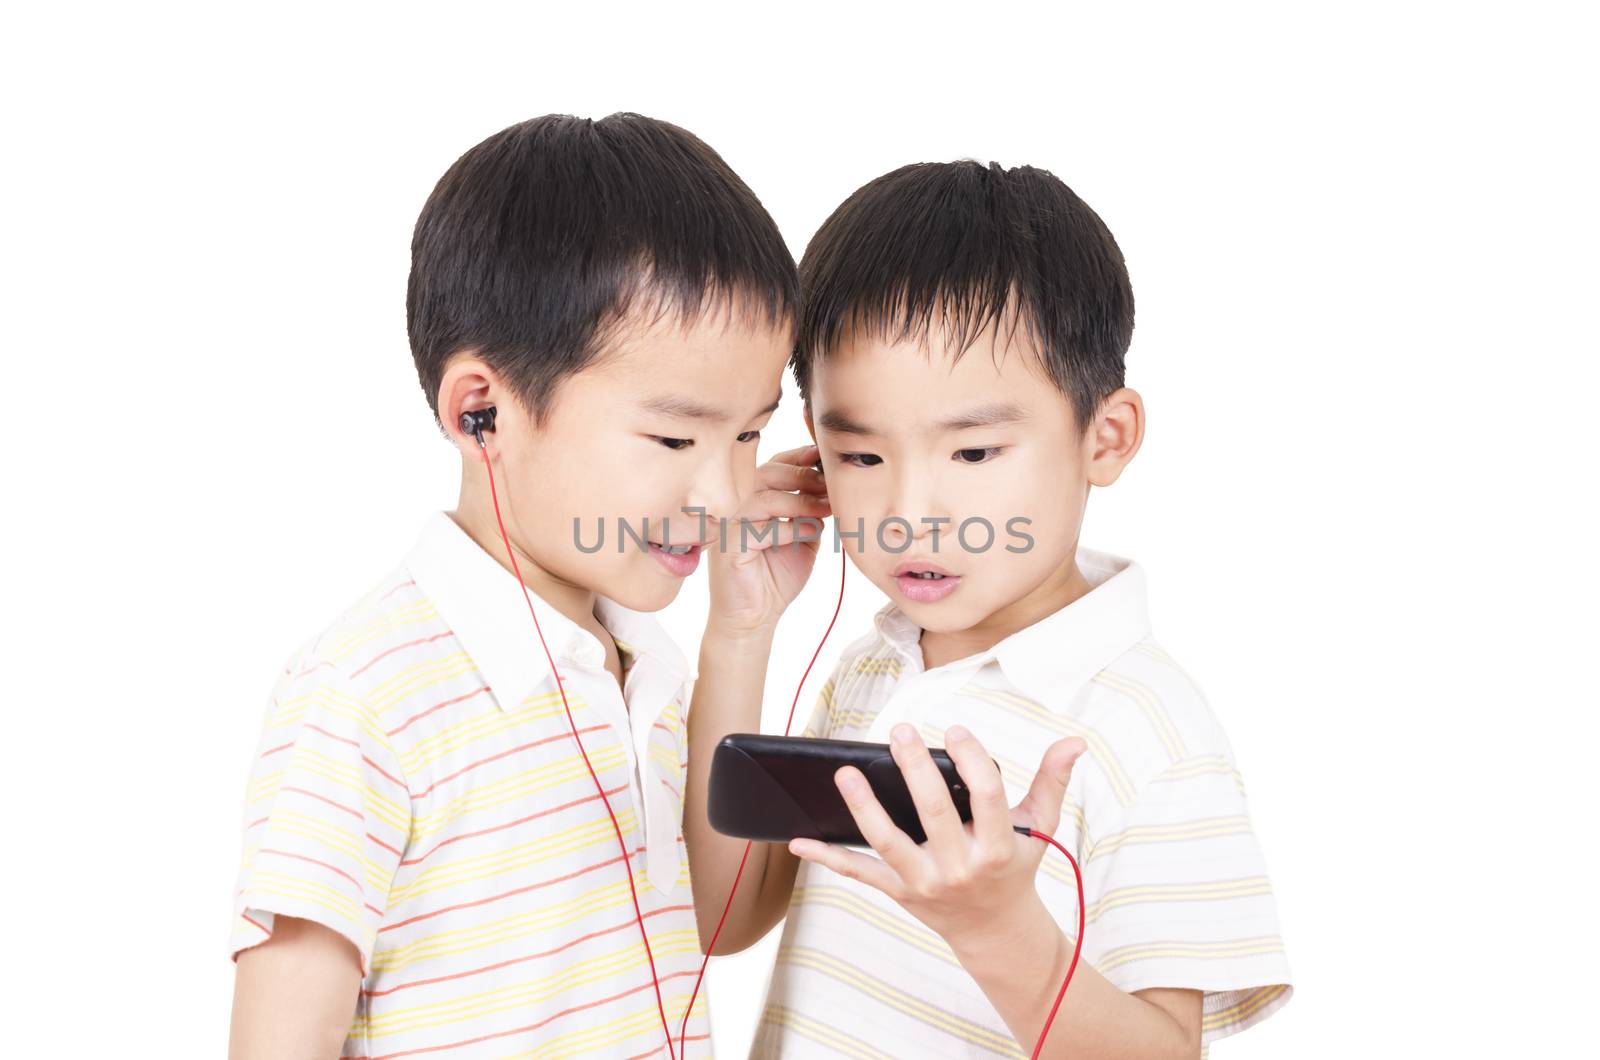 Cute children listen to music